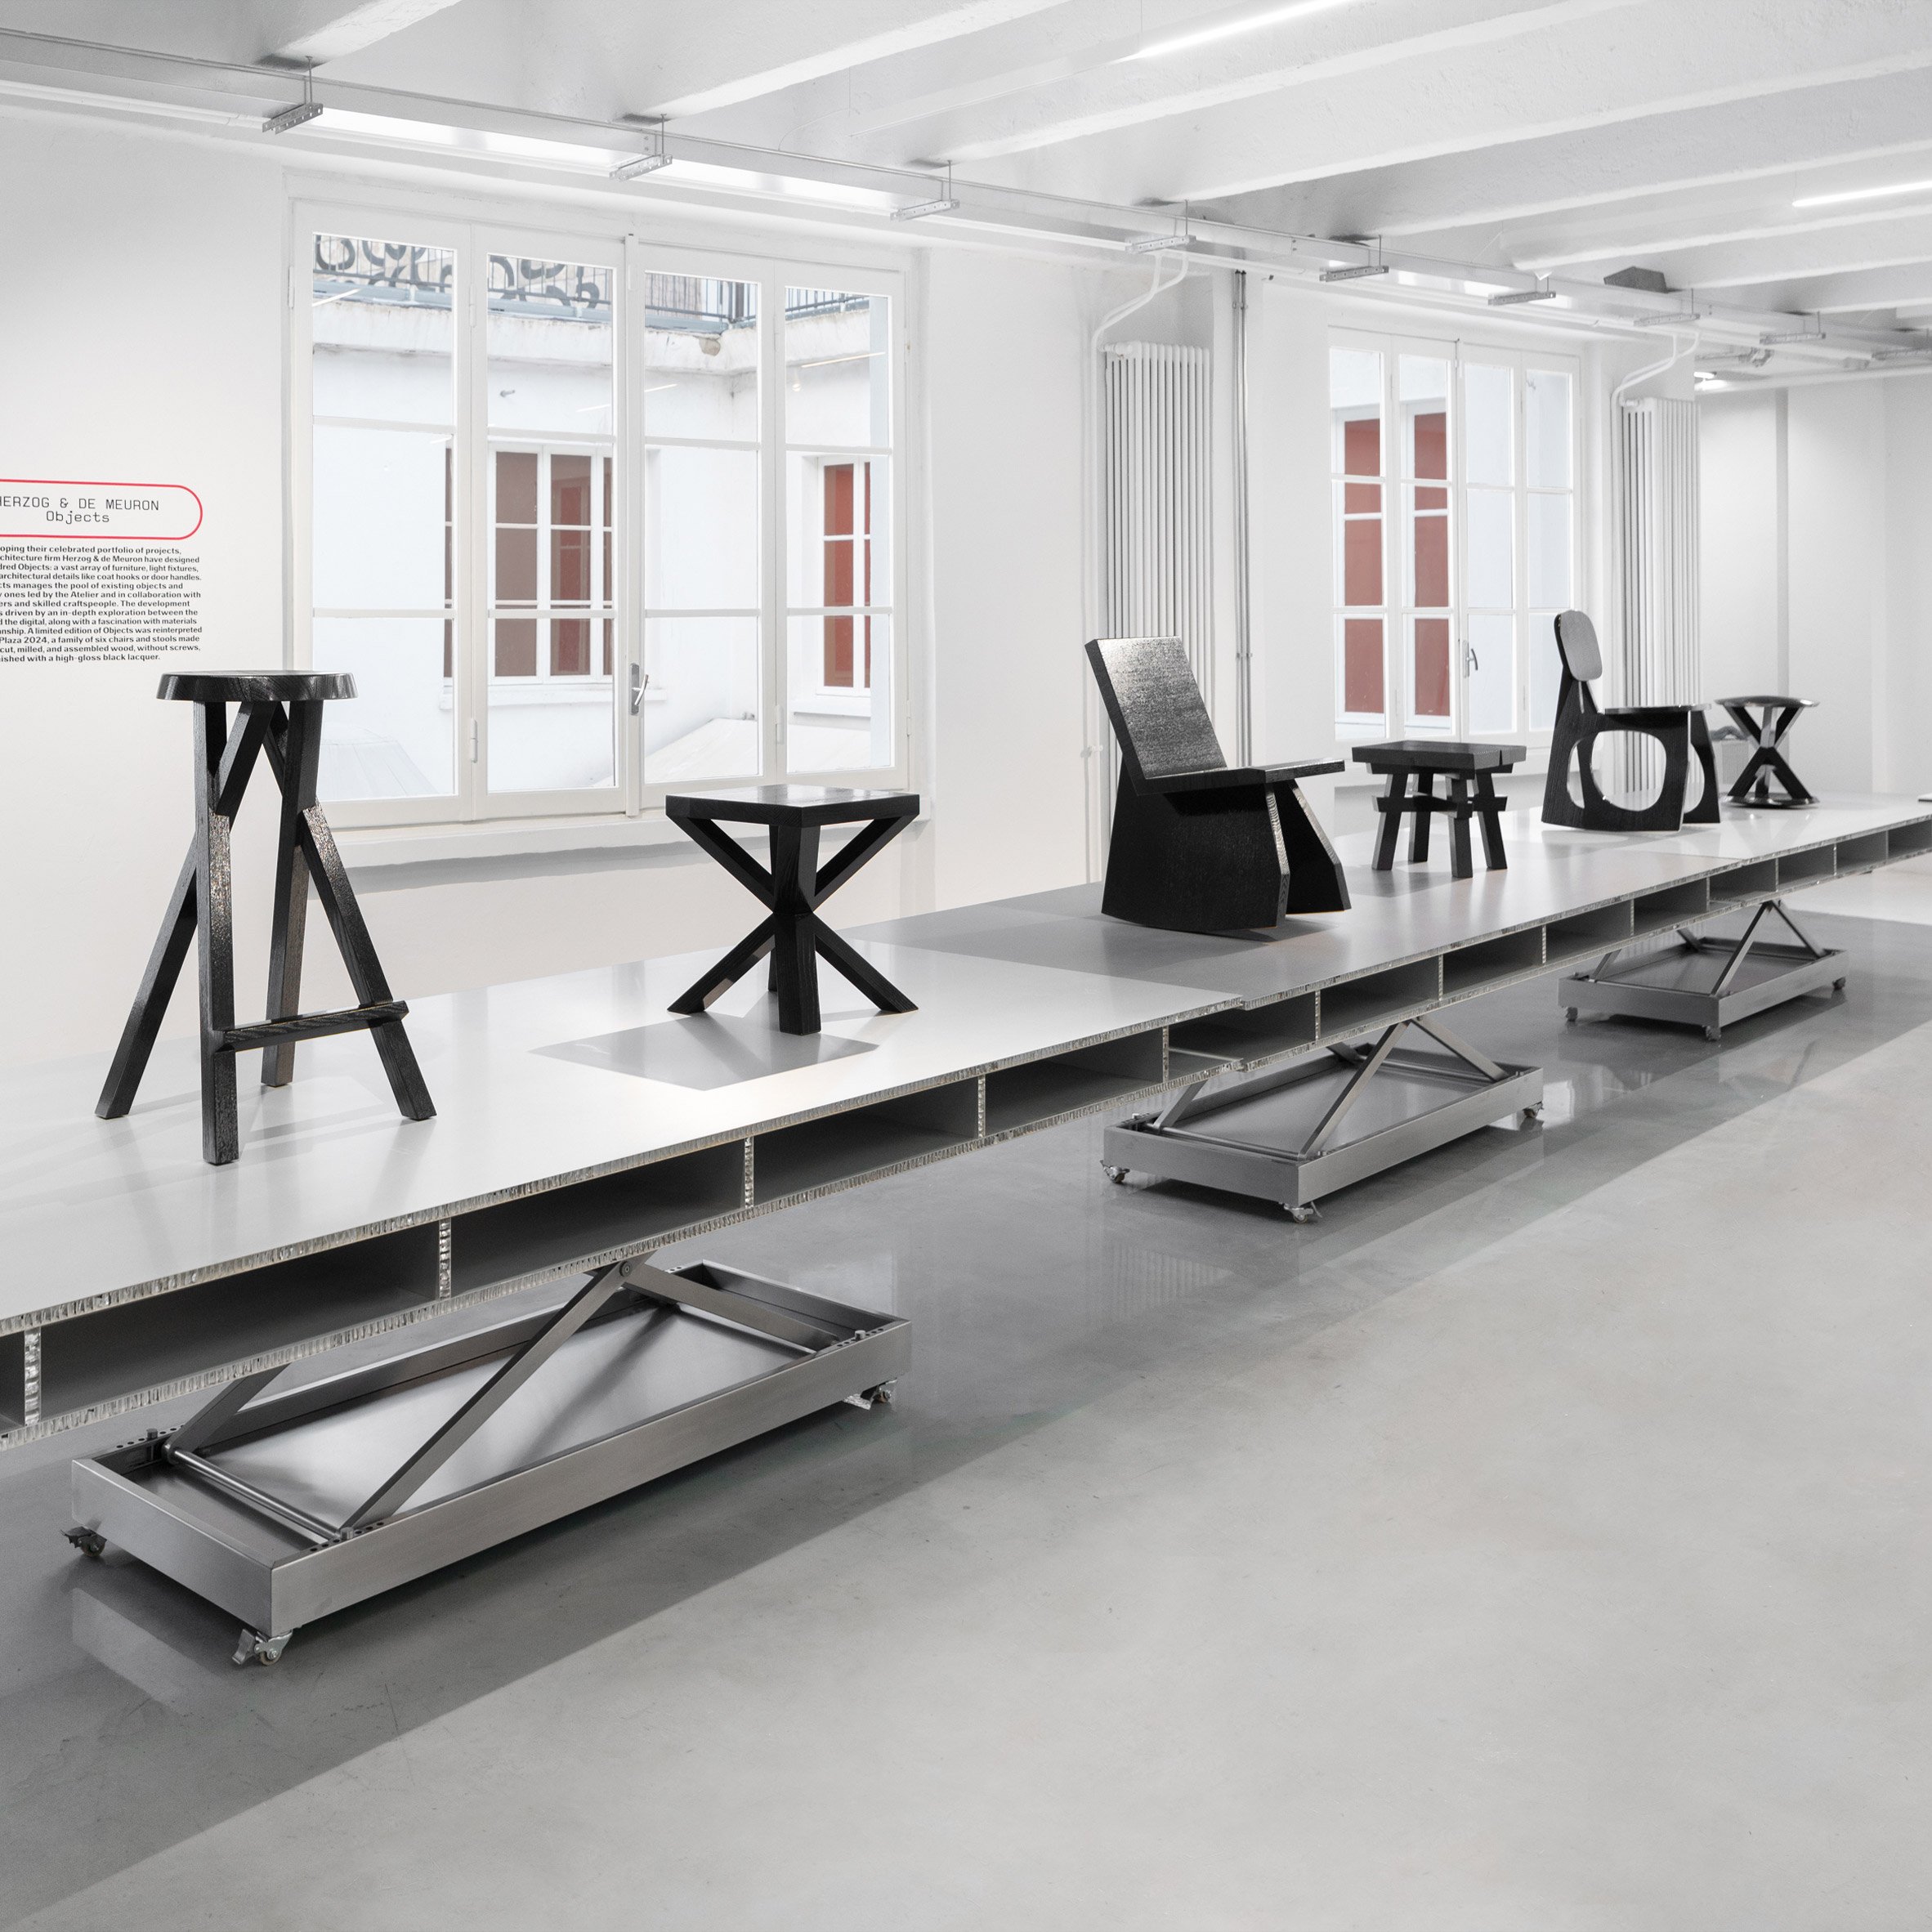 Chairs by Herzog & de Meuron